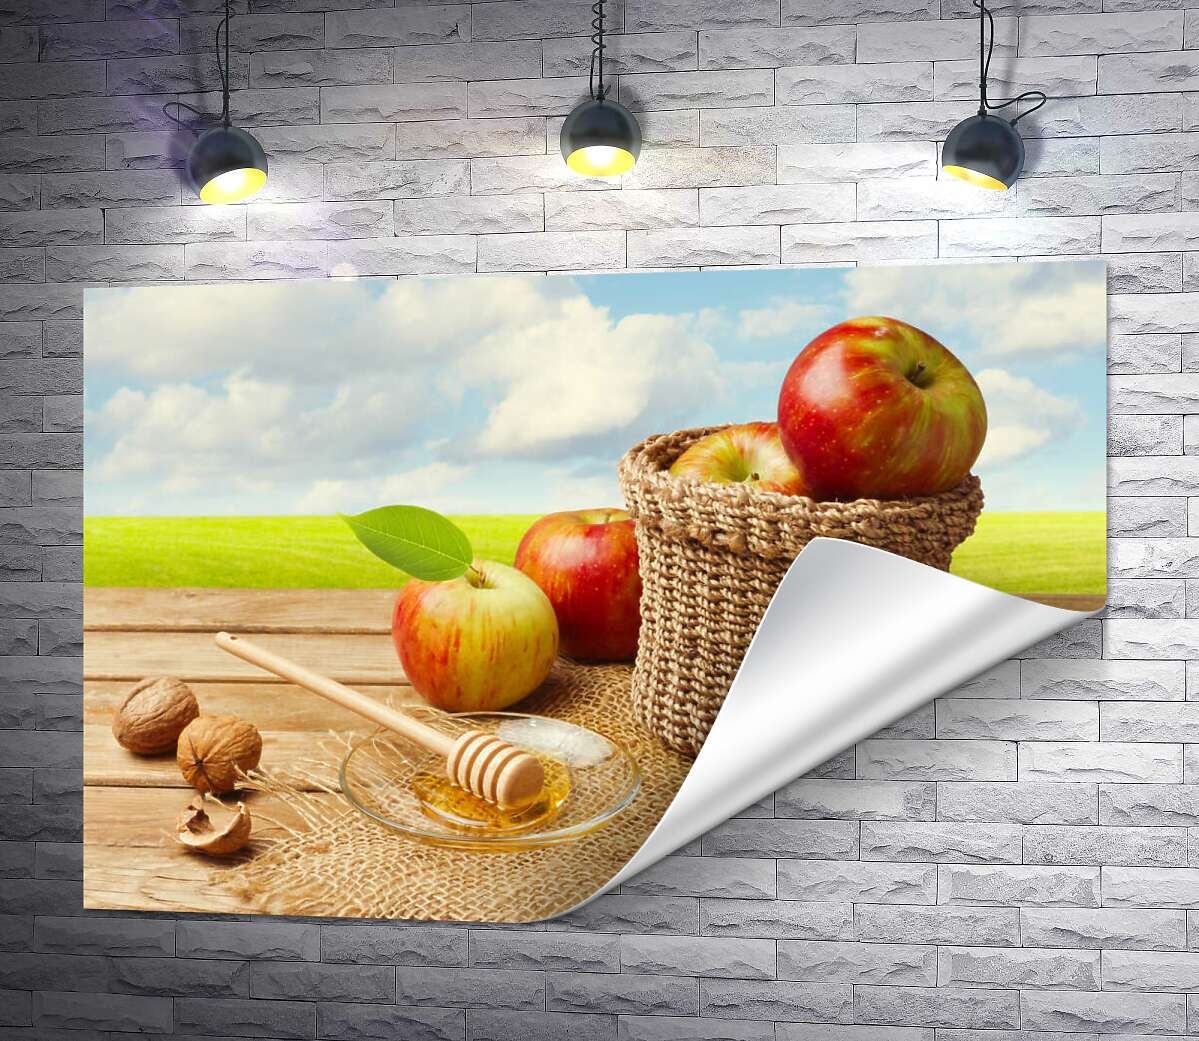 друк Дари осені: корзина із яблуками, мед та горіхи